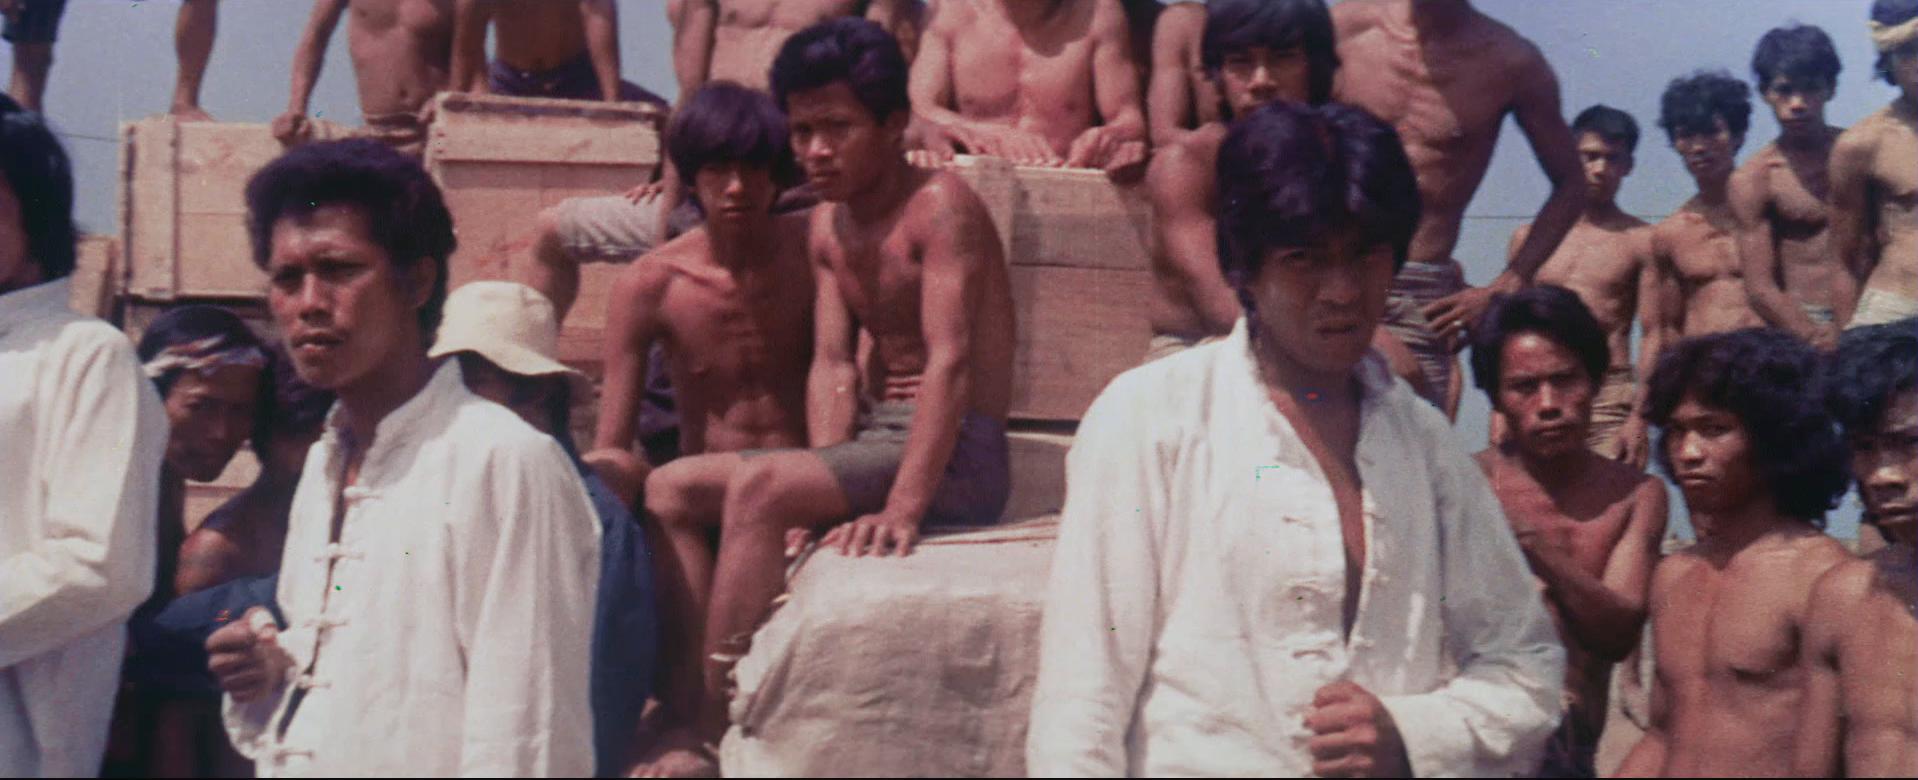 Xia nan yang (1974) Screenshot 5 